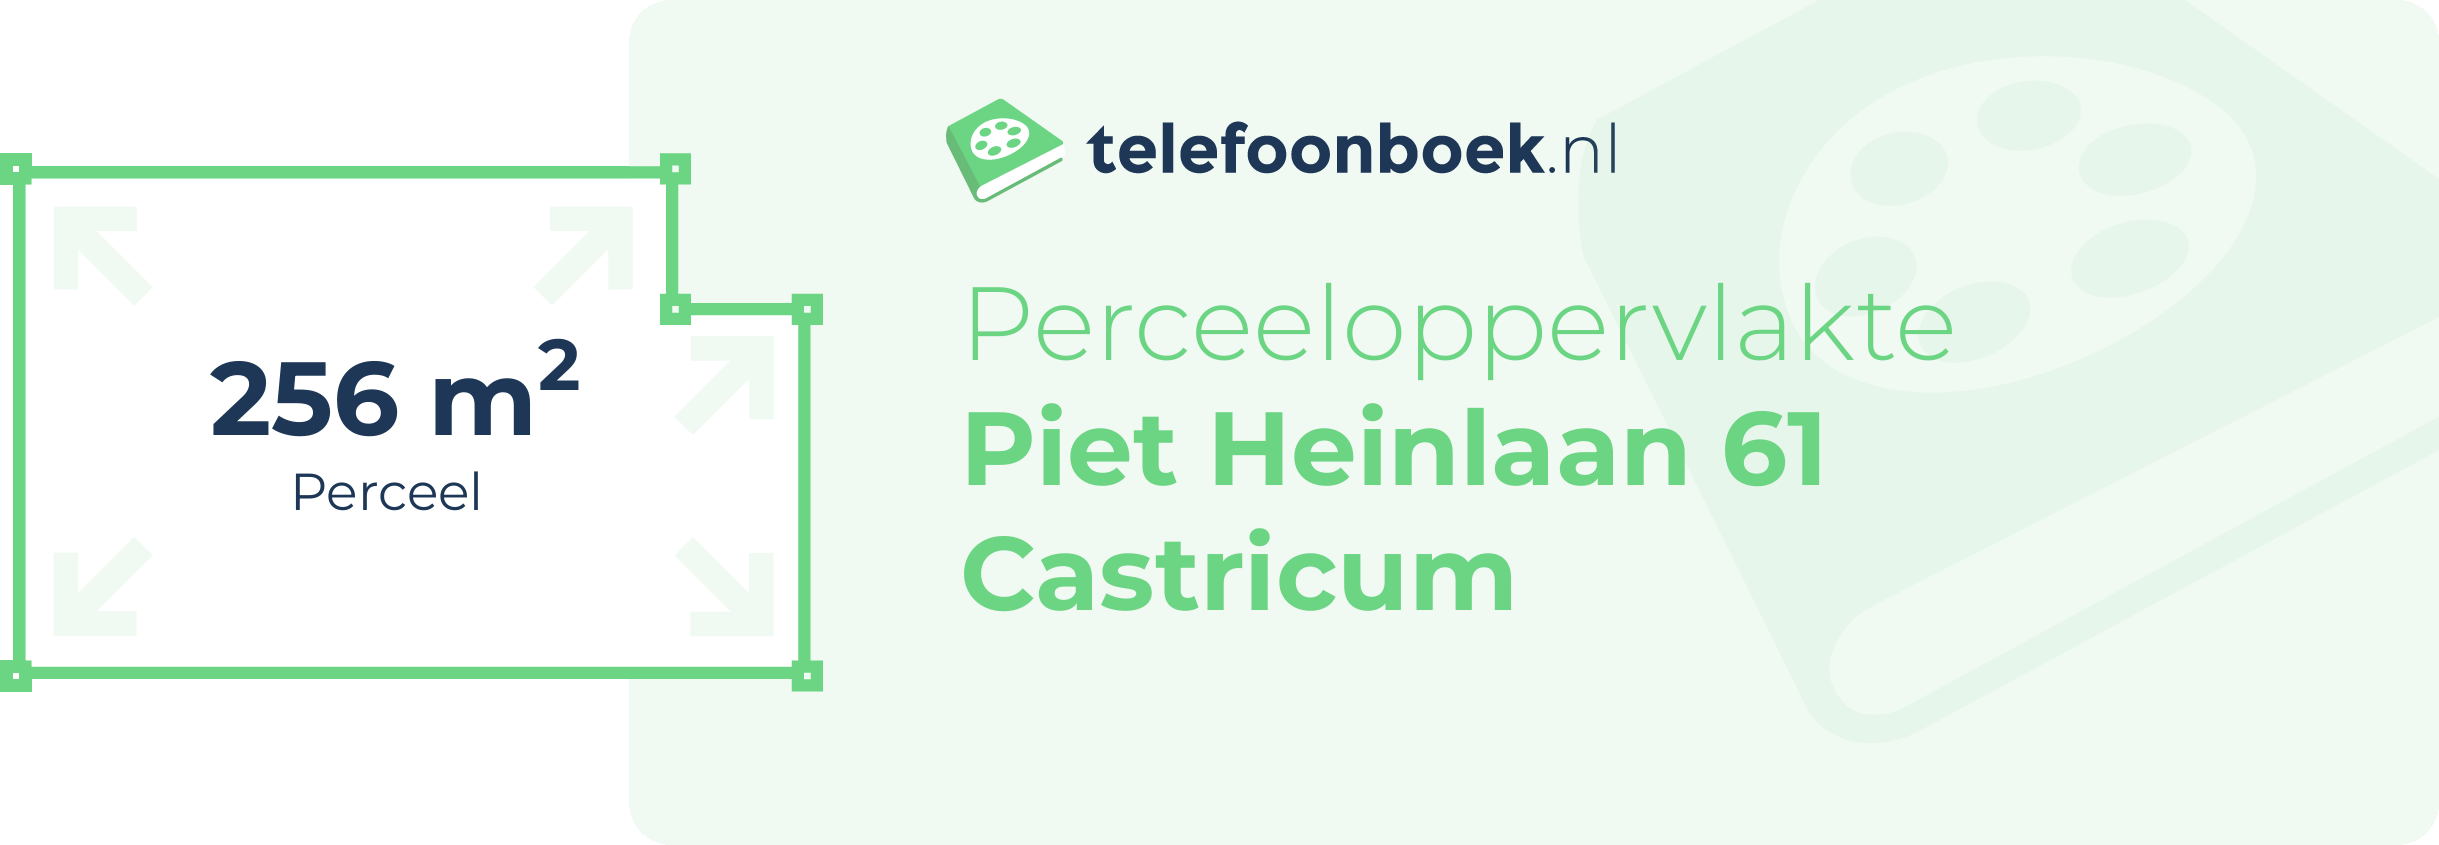 Perceeloppervlakte Piet Heinlaan 61 Castricum